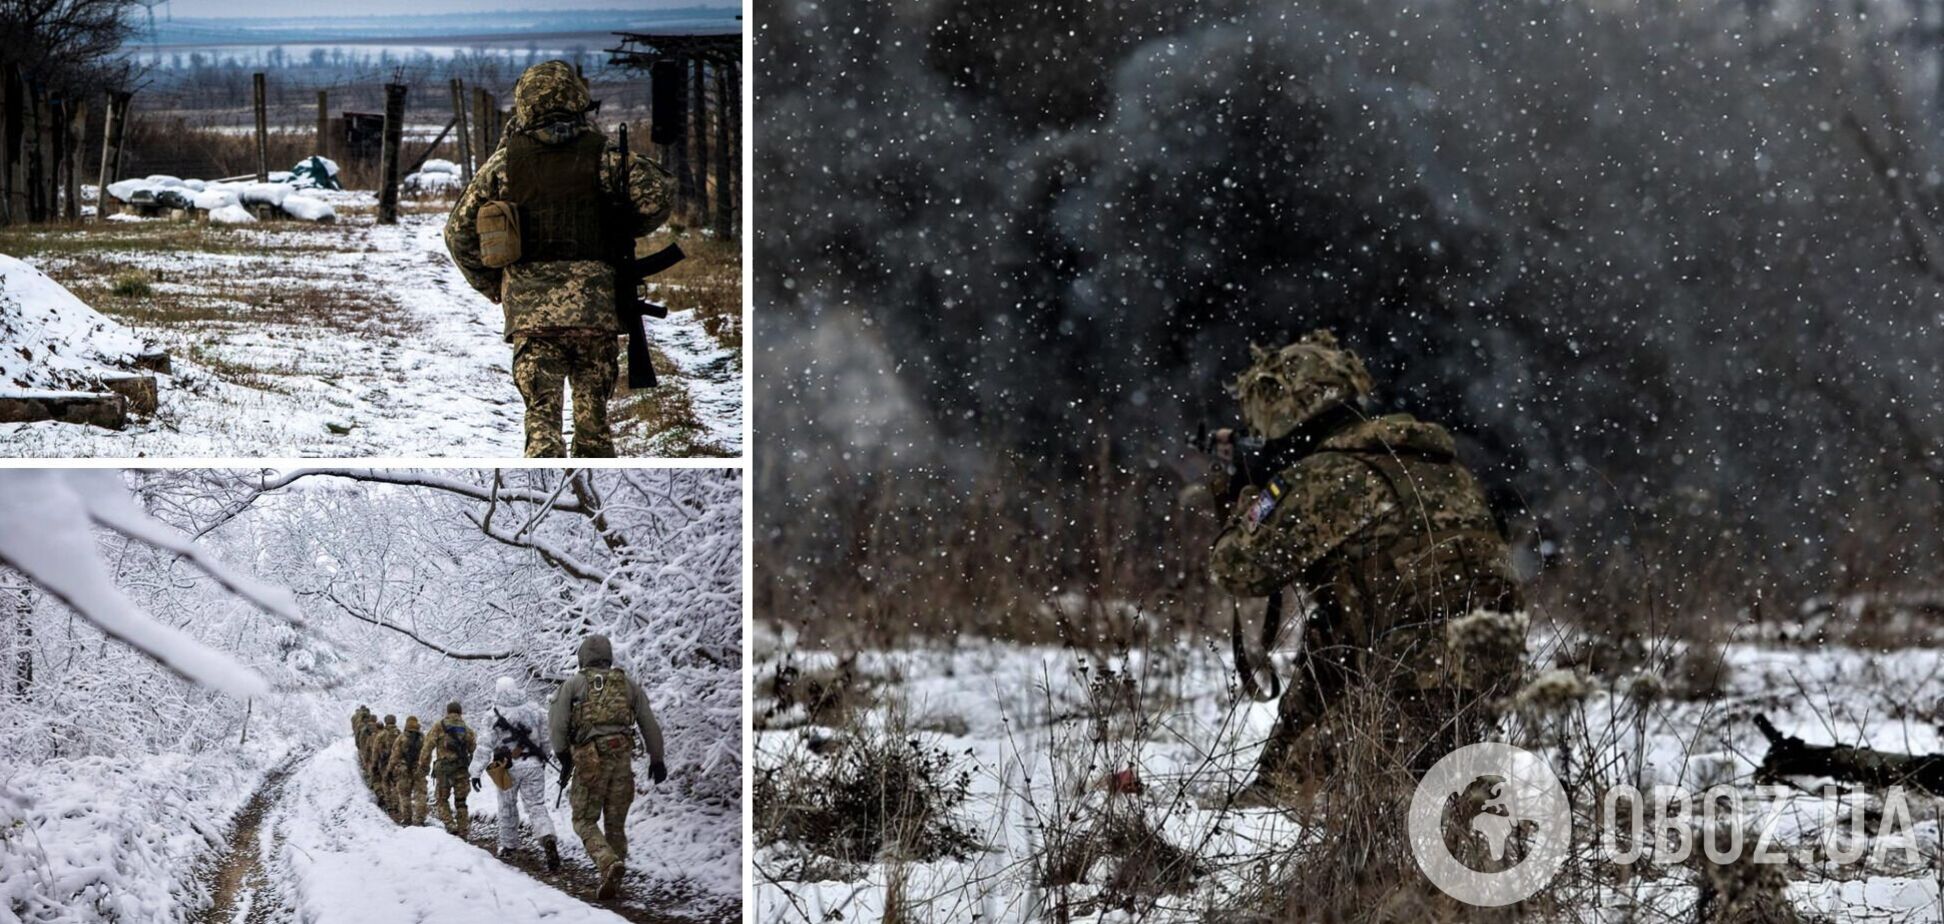 Війська РФ активізували зусилля для повного захоплення Донбасу, ЗСУ підтвердили удар по базі загарбників у Гаврилівці Другій – Генштаб